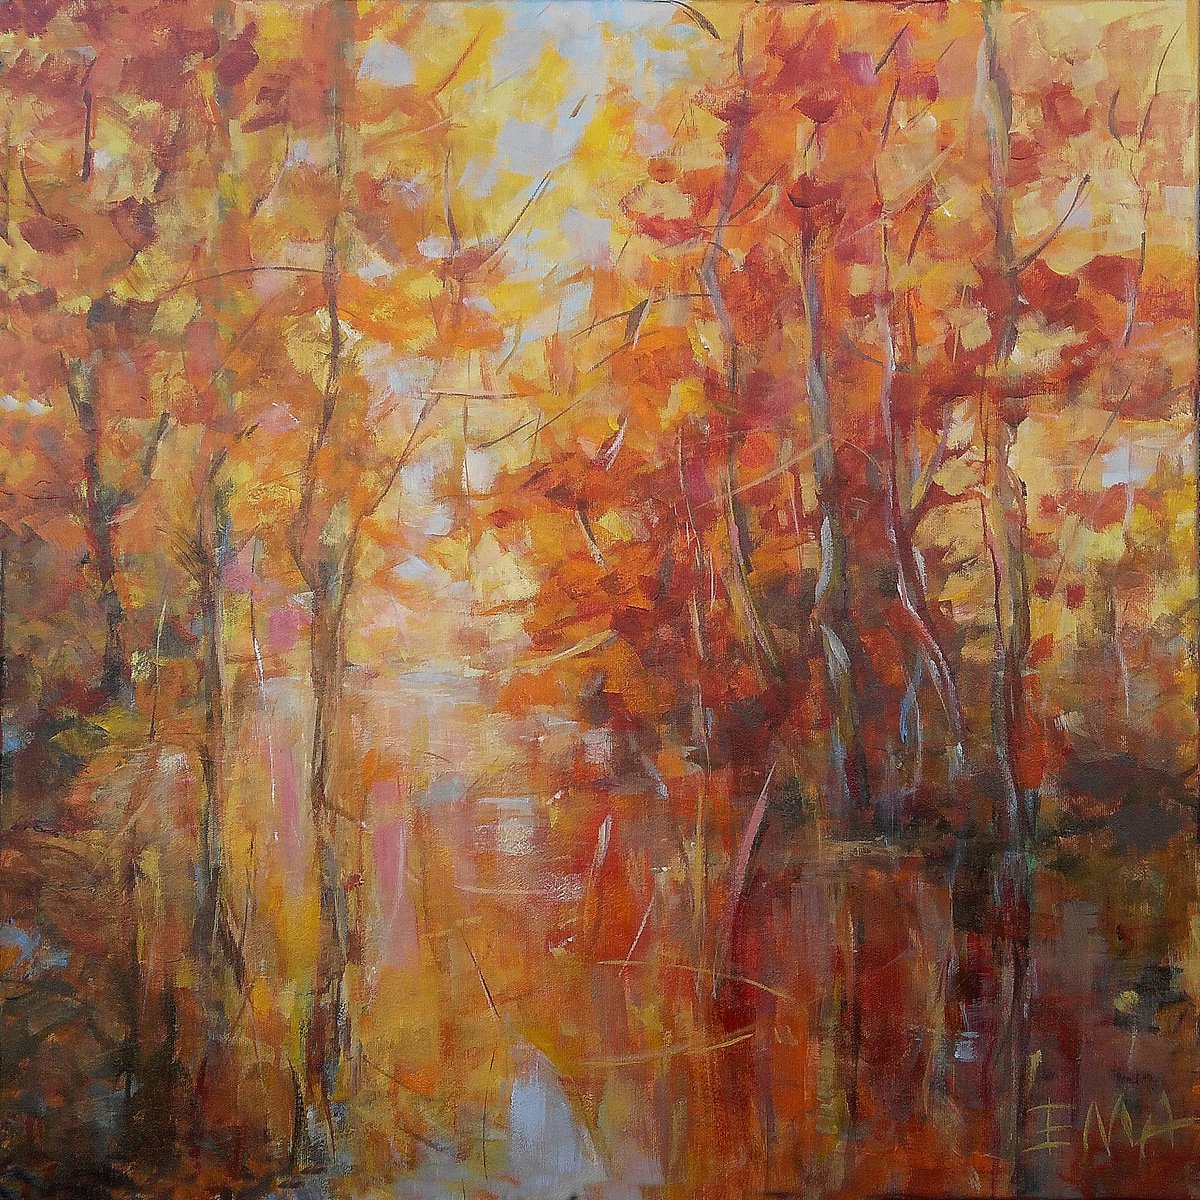 LOVING AUTUMN, 70x70cm, autumnal trees by the river landscape by Emilia Milcheva